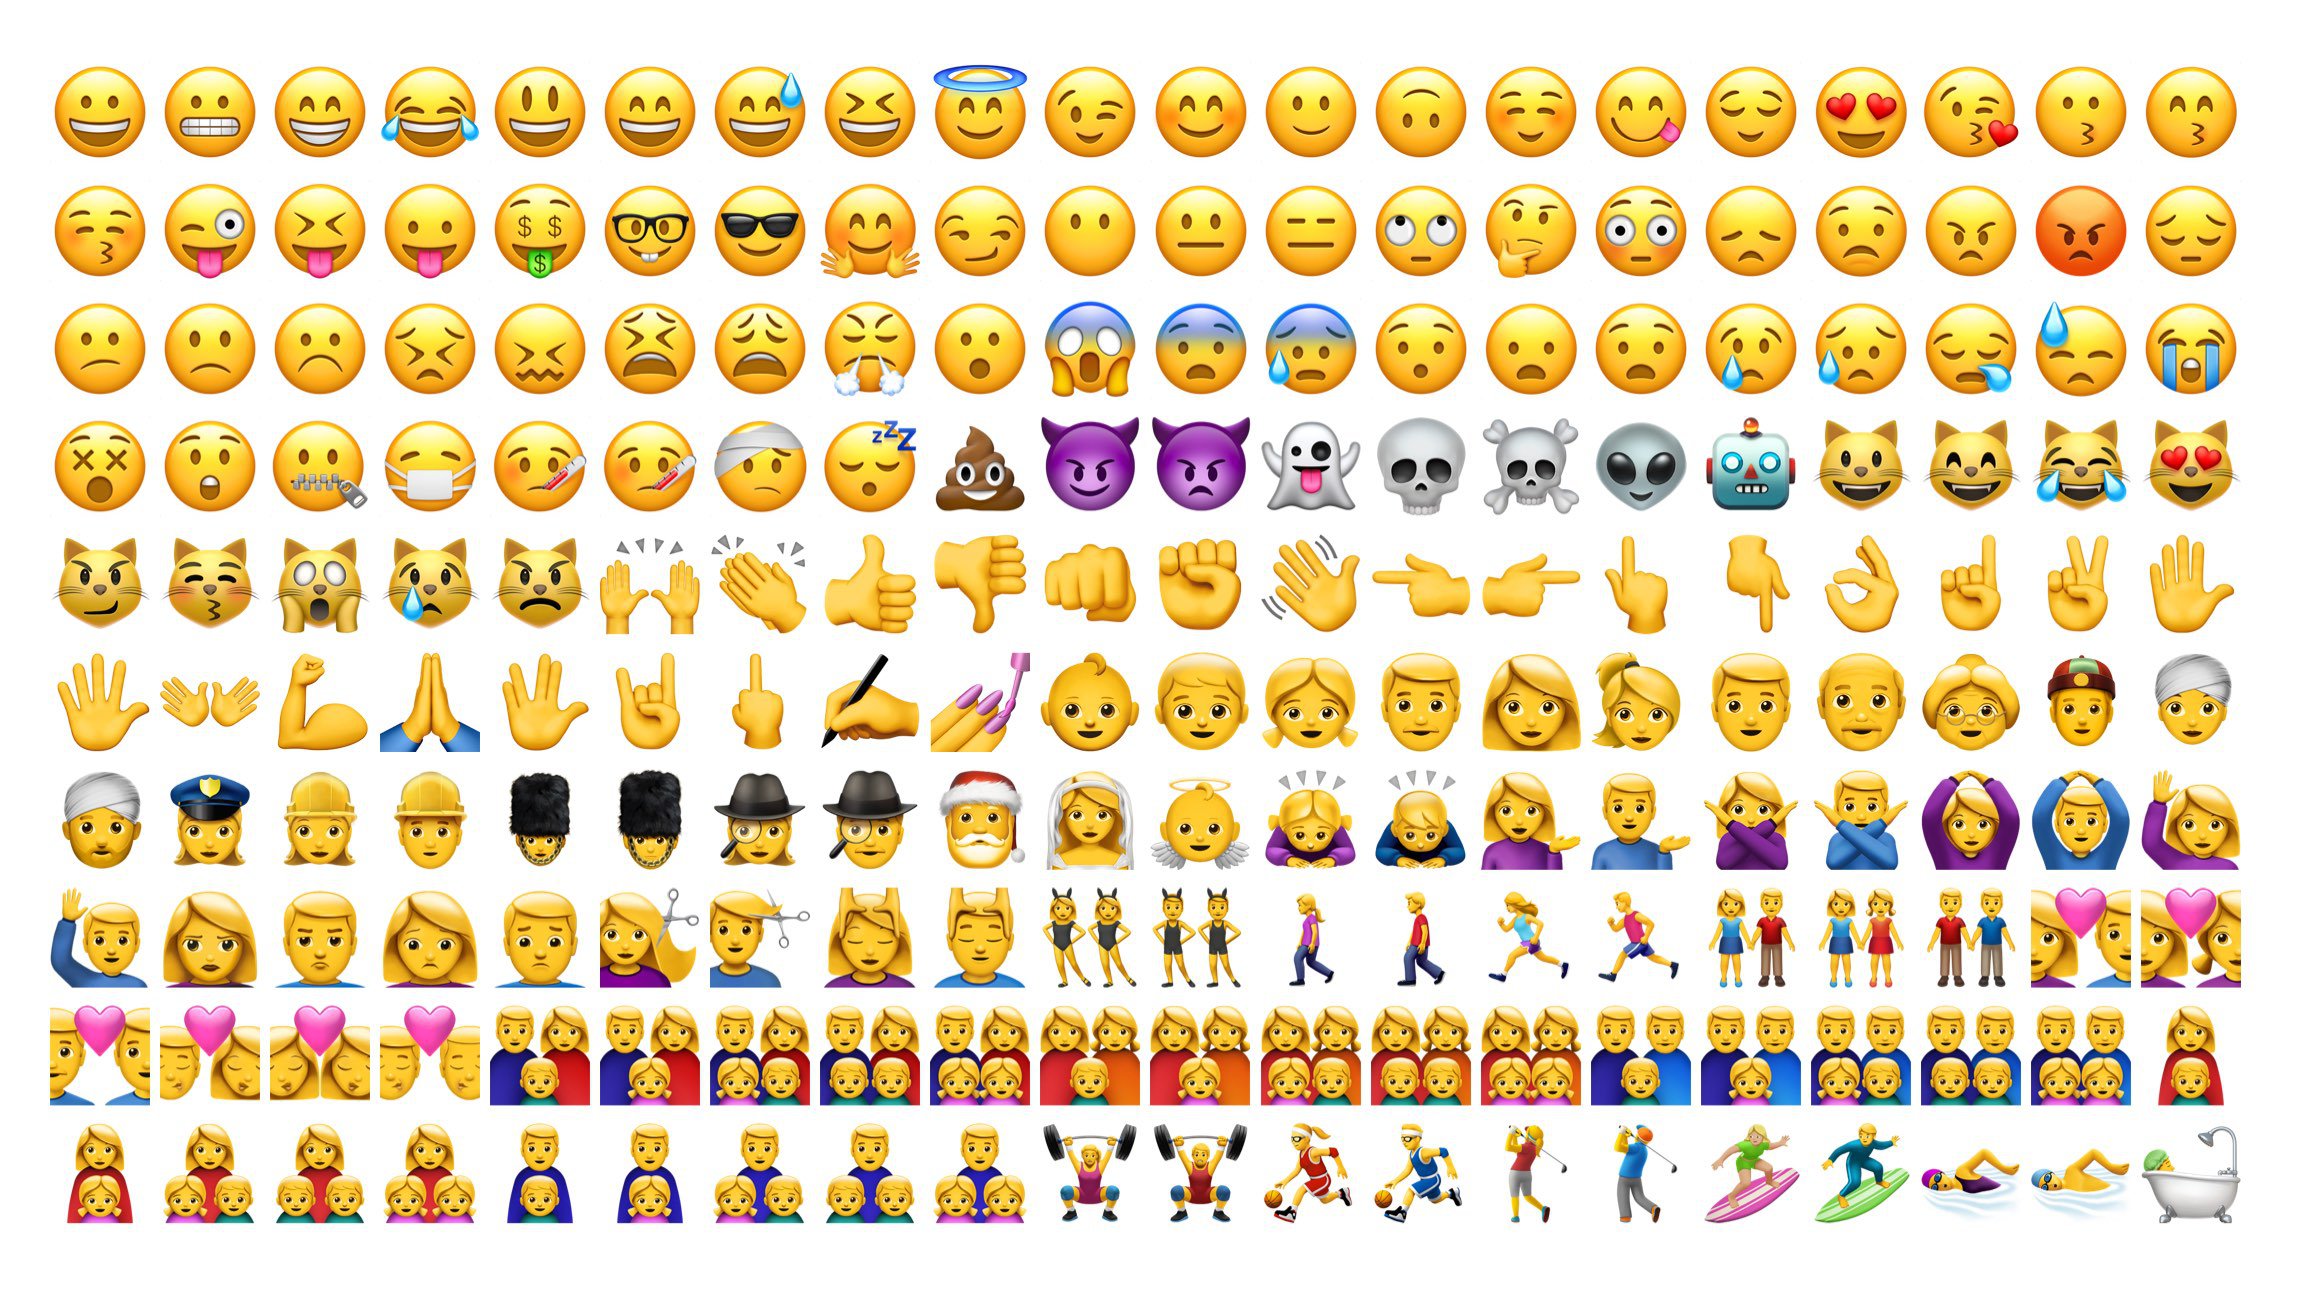 2016 fue un gran año para los emojis